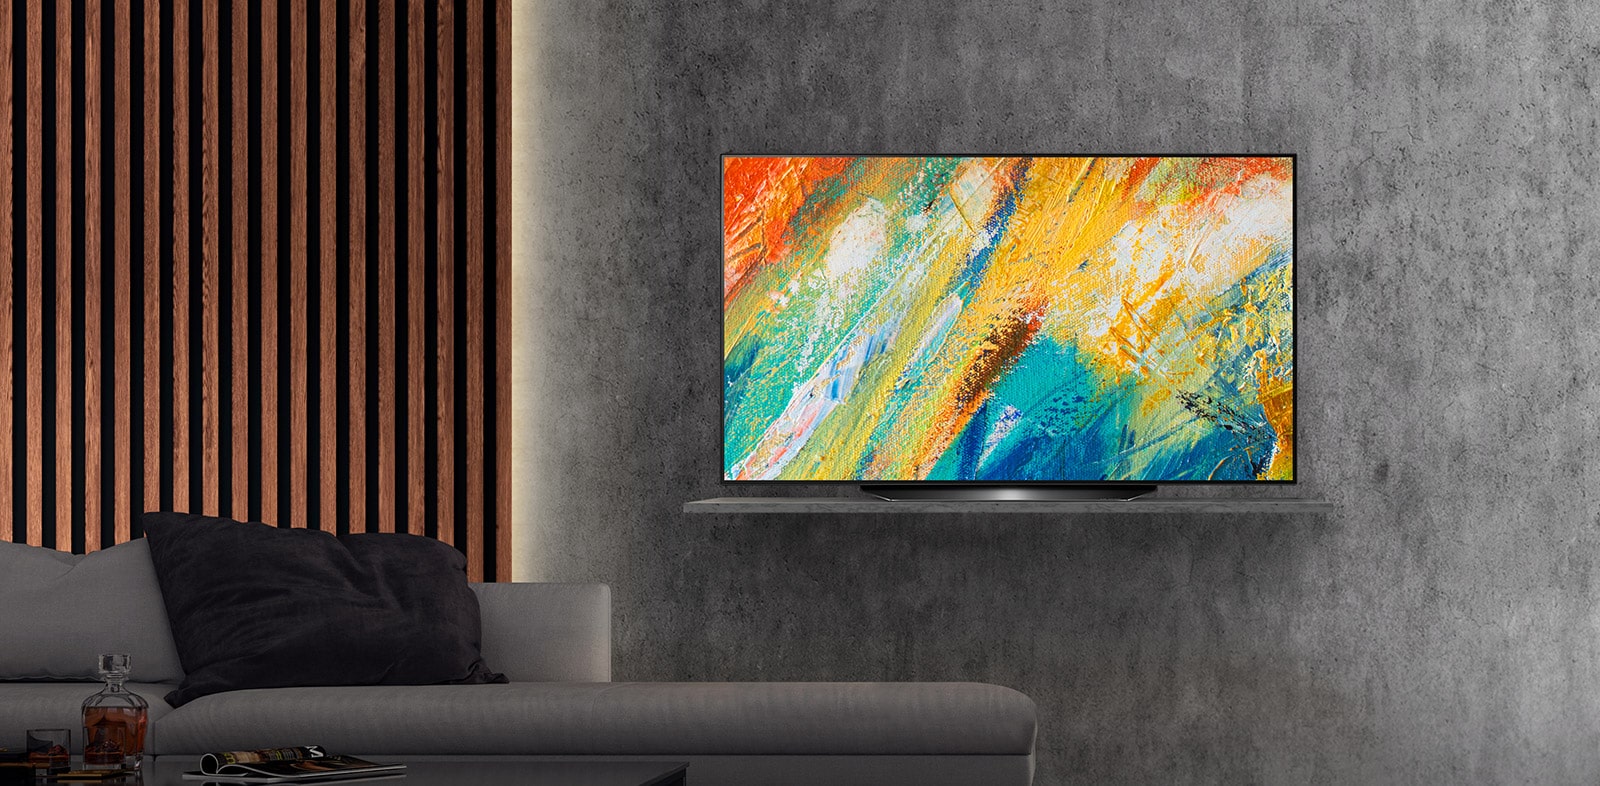 OLED 4K Gallery Design Hospitality TV con Soluzioni Pro:Centric 